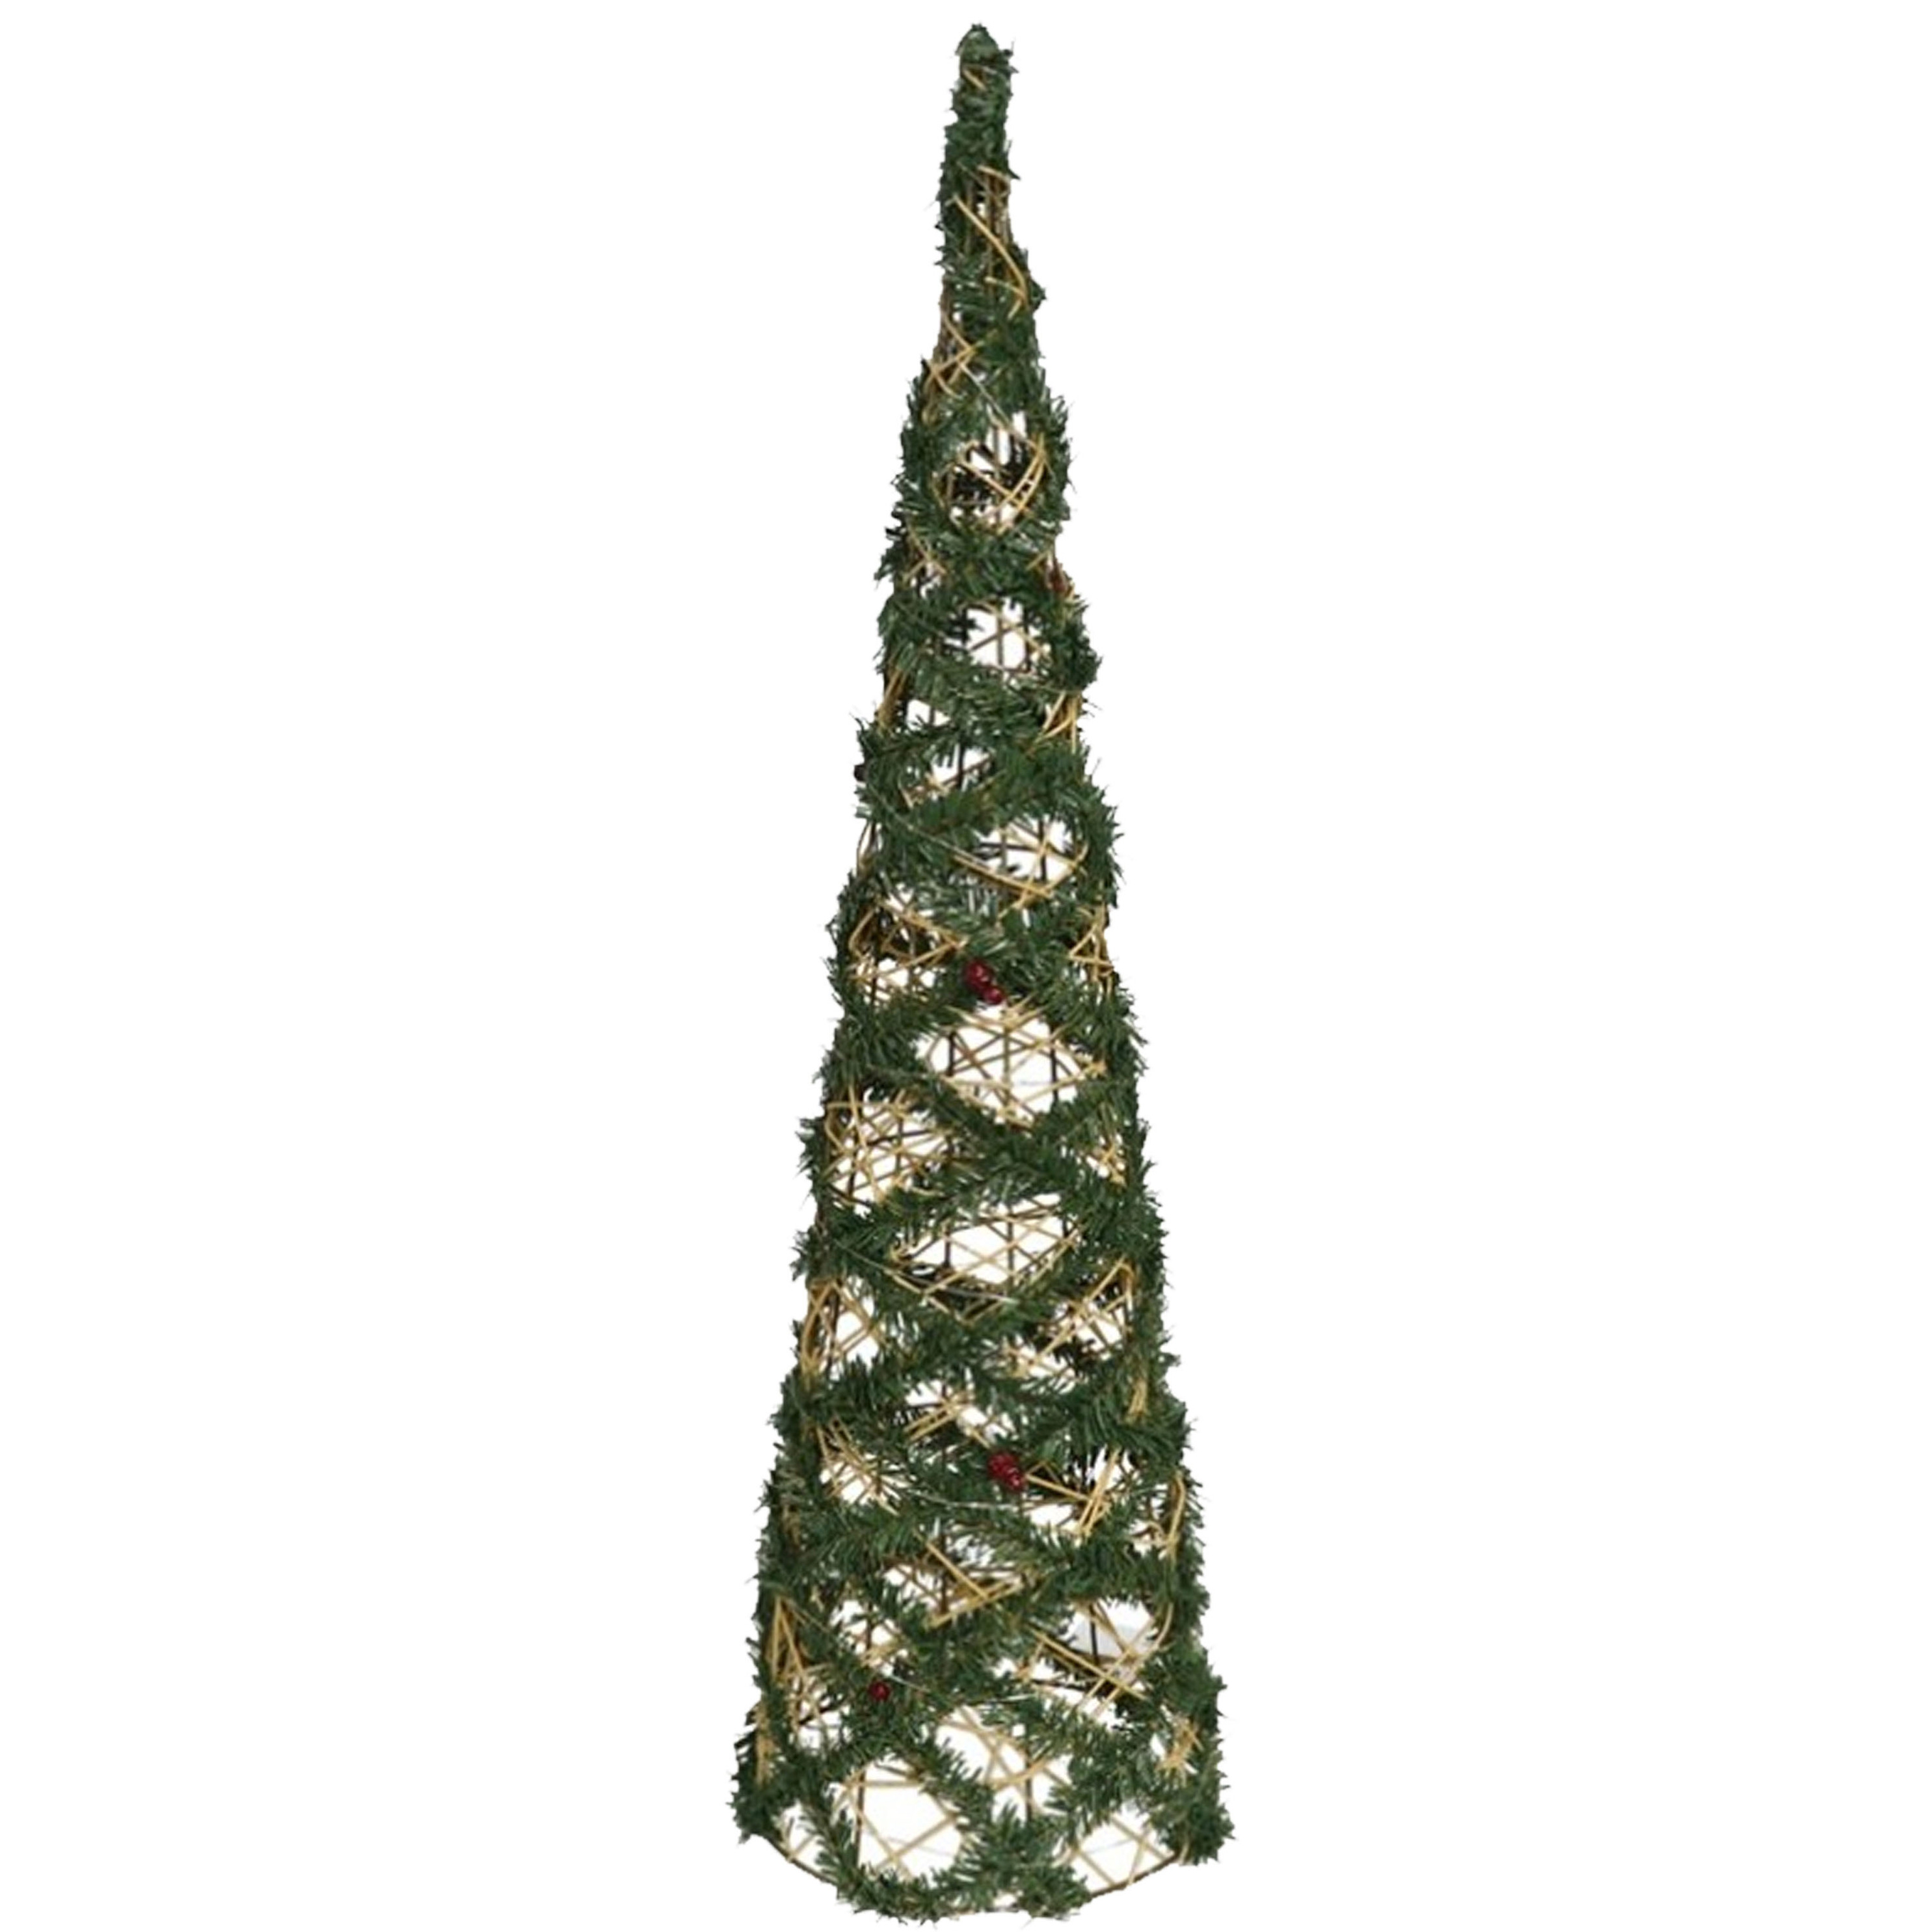 Kerstverlichting figuren Led kegel kerstboom draad-groen 78 cm 60 lampjes